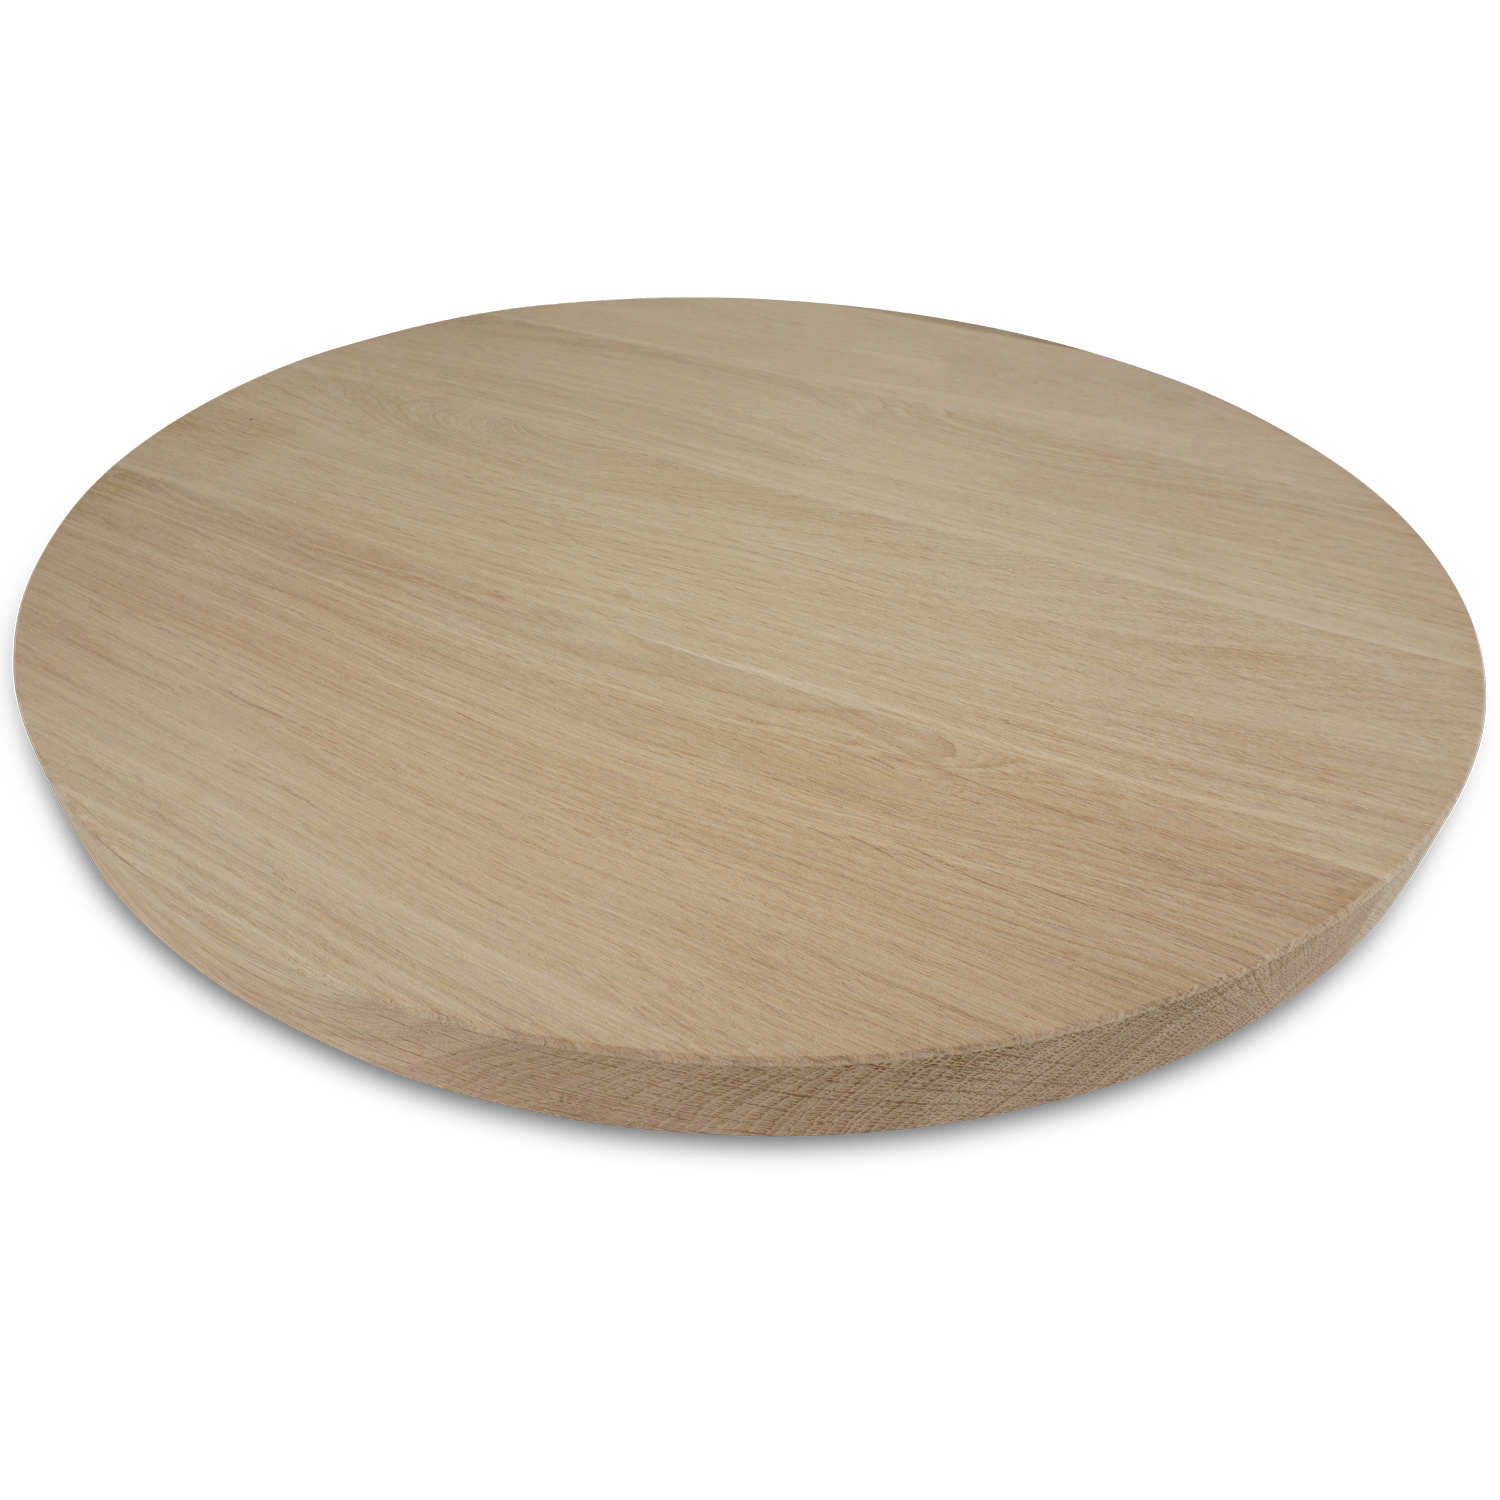  Rond eiken tafelblad op maat - 4 cm dik (1-laag) - foutvrij Europees eikenhout - met brede lamellen (circa 10-12 cm)nhout - verlijmd kd 8-12% - diameter van 35 tot 117 cm